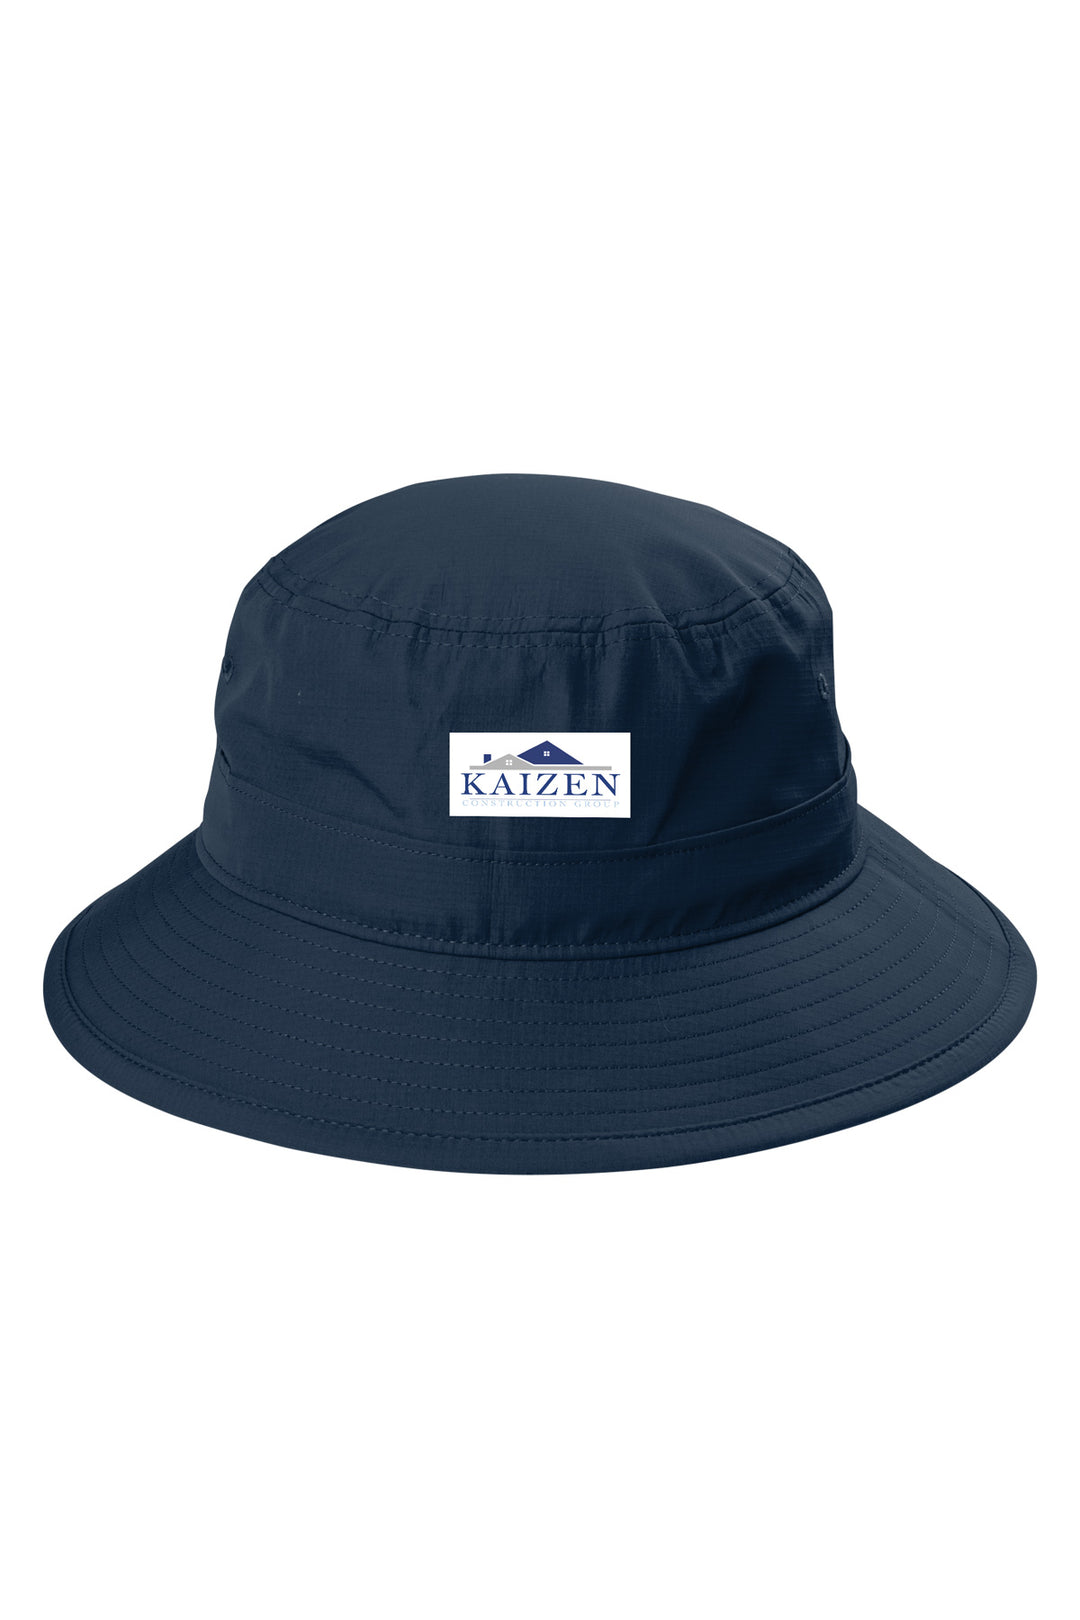 Outdoor UV Bucket Hat